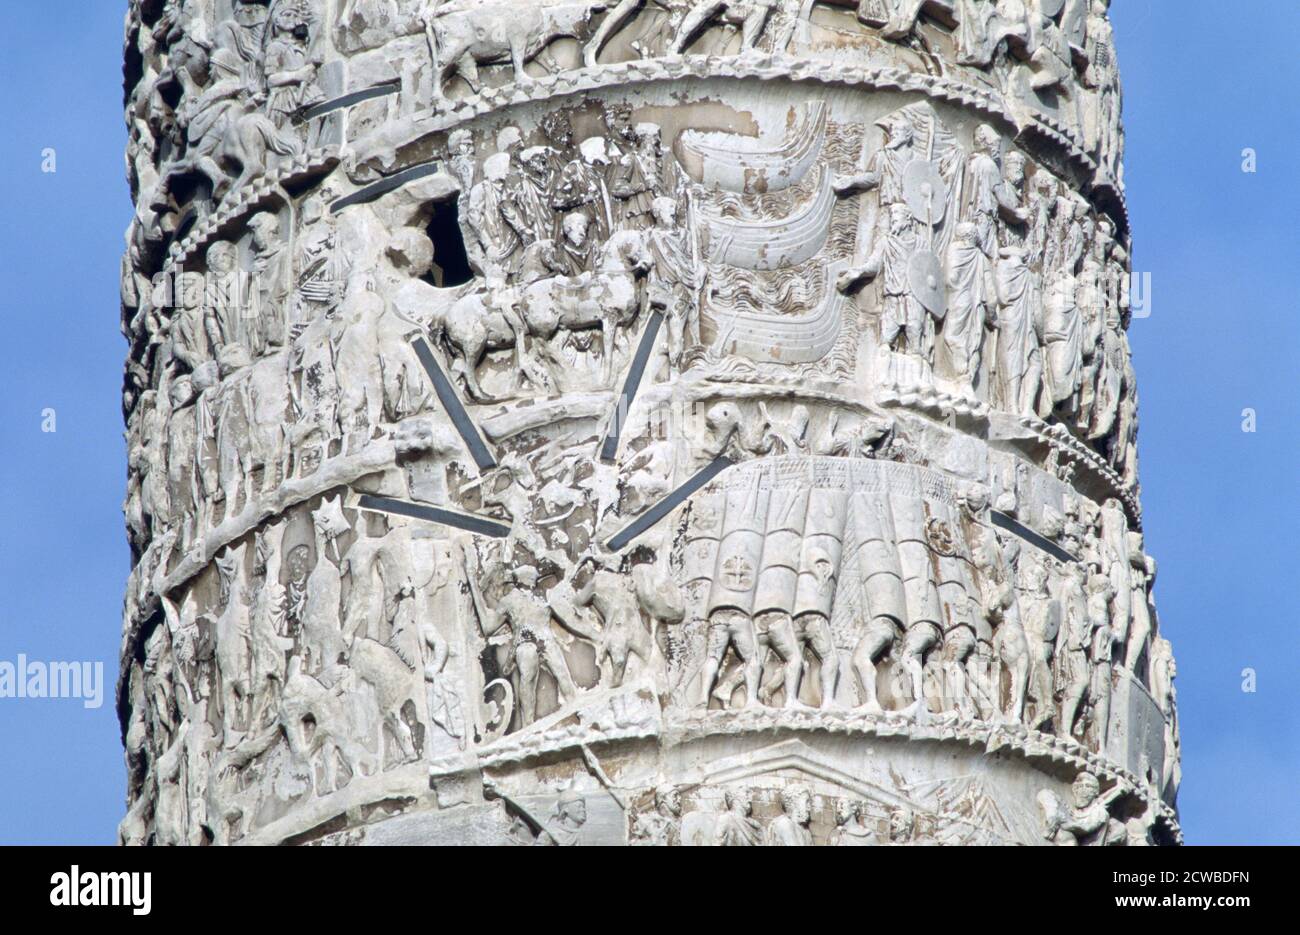 Colonna di Marco Aurelio, (dettaglio), Piazza colonna, Roma. La colonna di Marcus Aurelio (in latino: Columna Centenaria Divorum Marci et Faustinae) è una colonna dorica, con rilievo a spirale, costruita in onore dell'imperatore romano Marco Aurelio e modellata sulla colonna di Traiano. L'artista è sconosciuto. Foto Stock